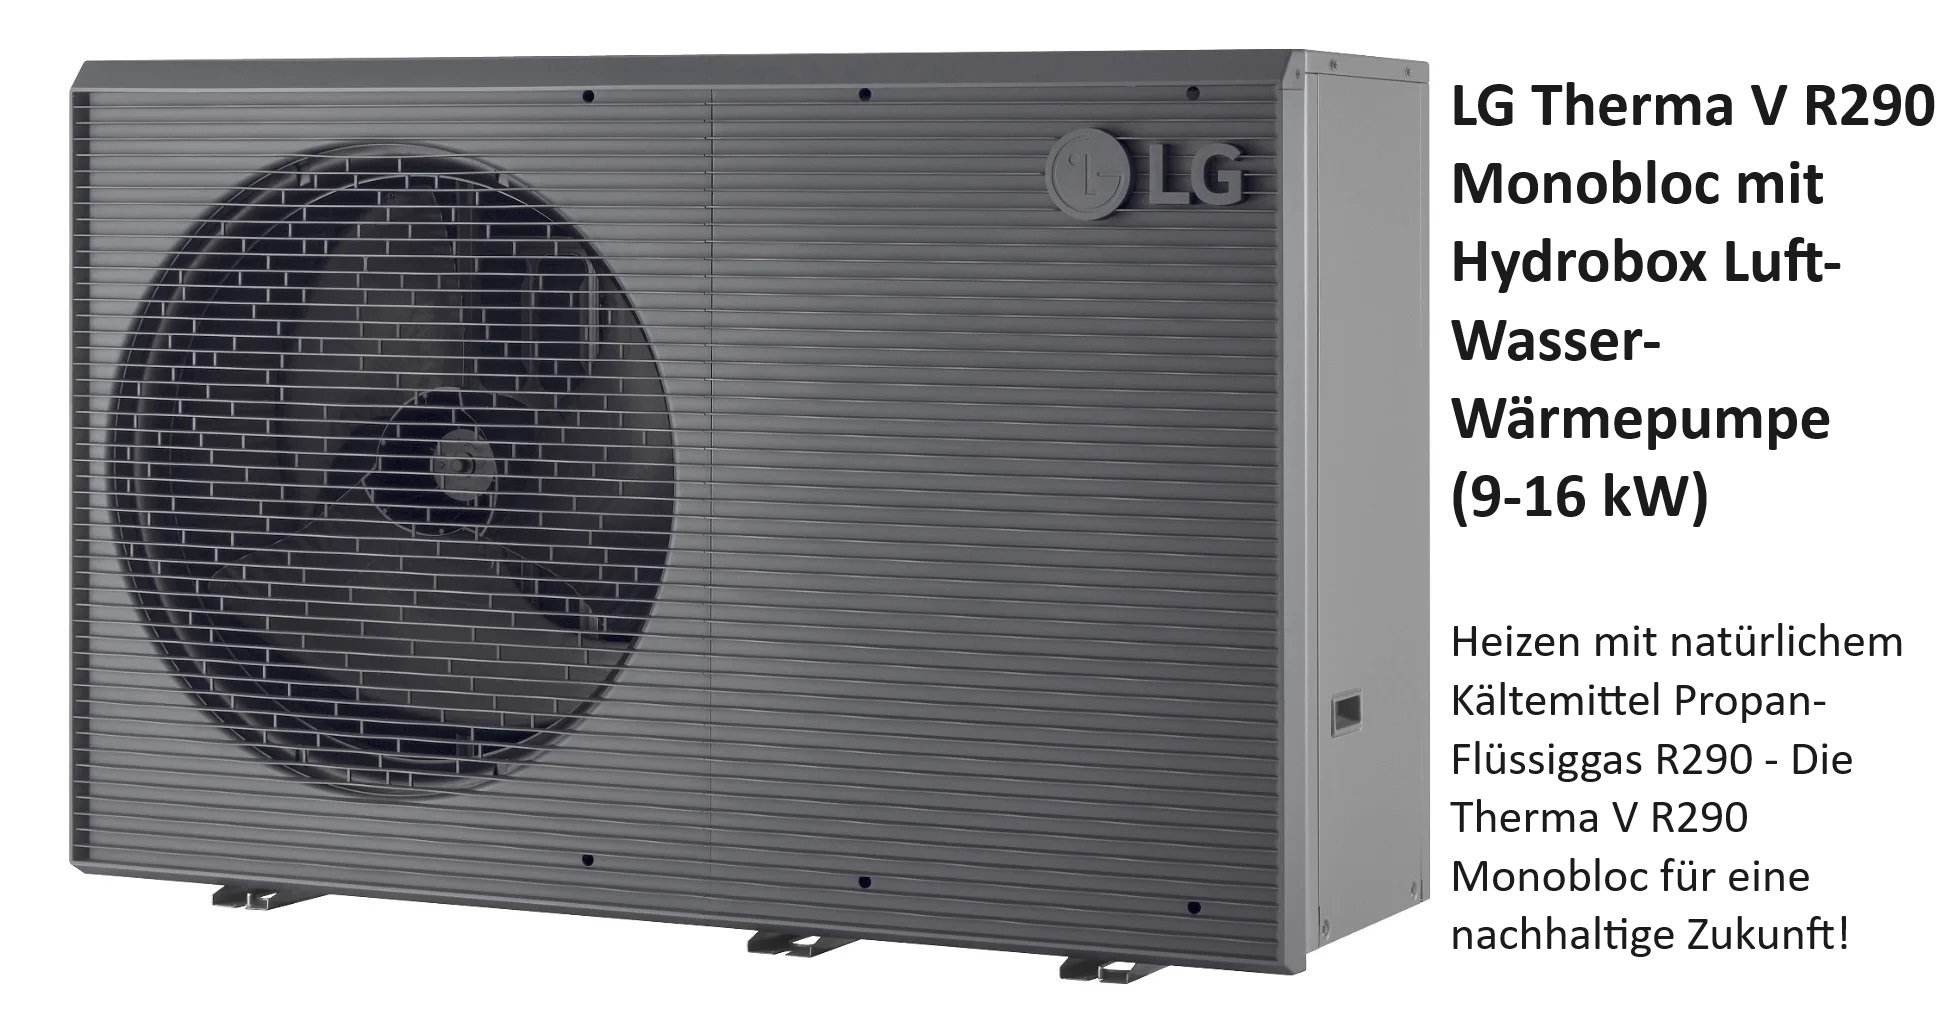 LG Therma V R290 Monobloc mit Hydrobox Luft-Wasser-Wärmepumpe (9-16 kW),Heizen mit natürlichem Kältemittel Propan-Flüssiggas R290 - Die Therma V R290 Monobloc für eine nachhaltige Zukunft:      Zuverlässig     Effizient     Umweltfreundlich 